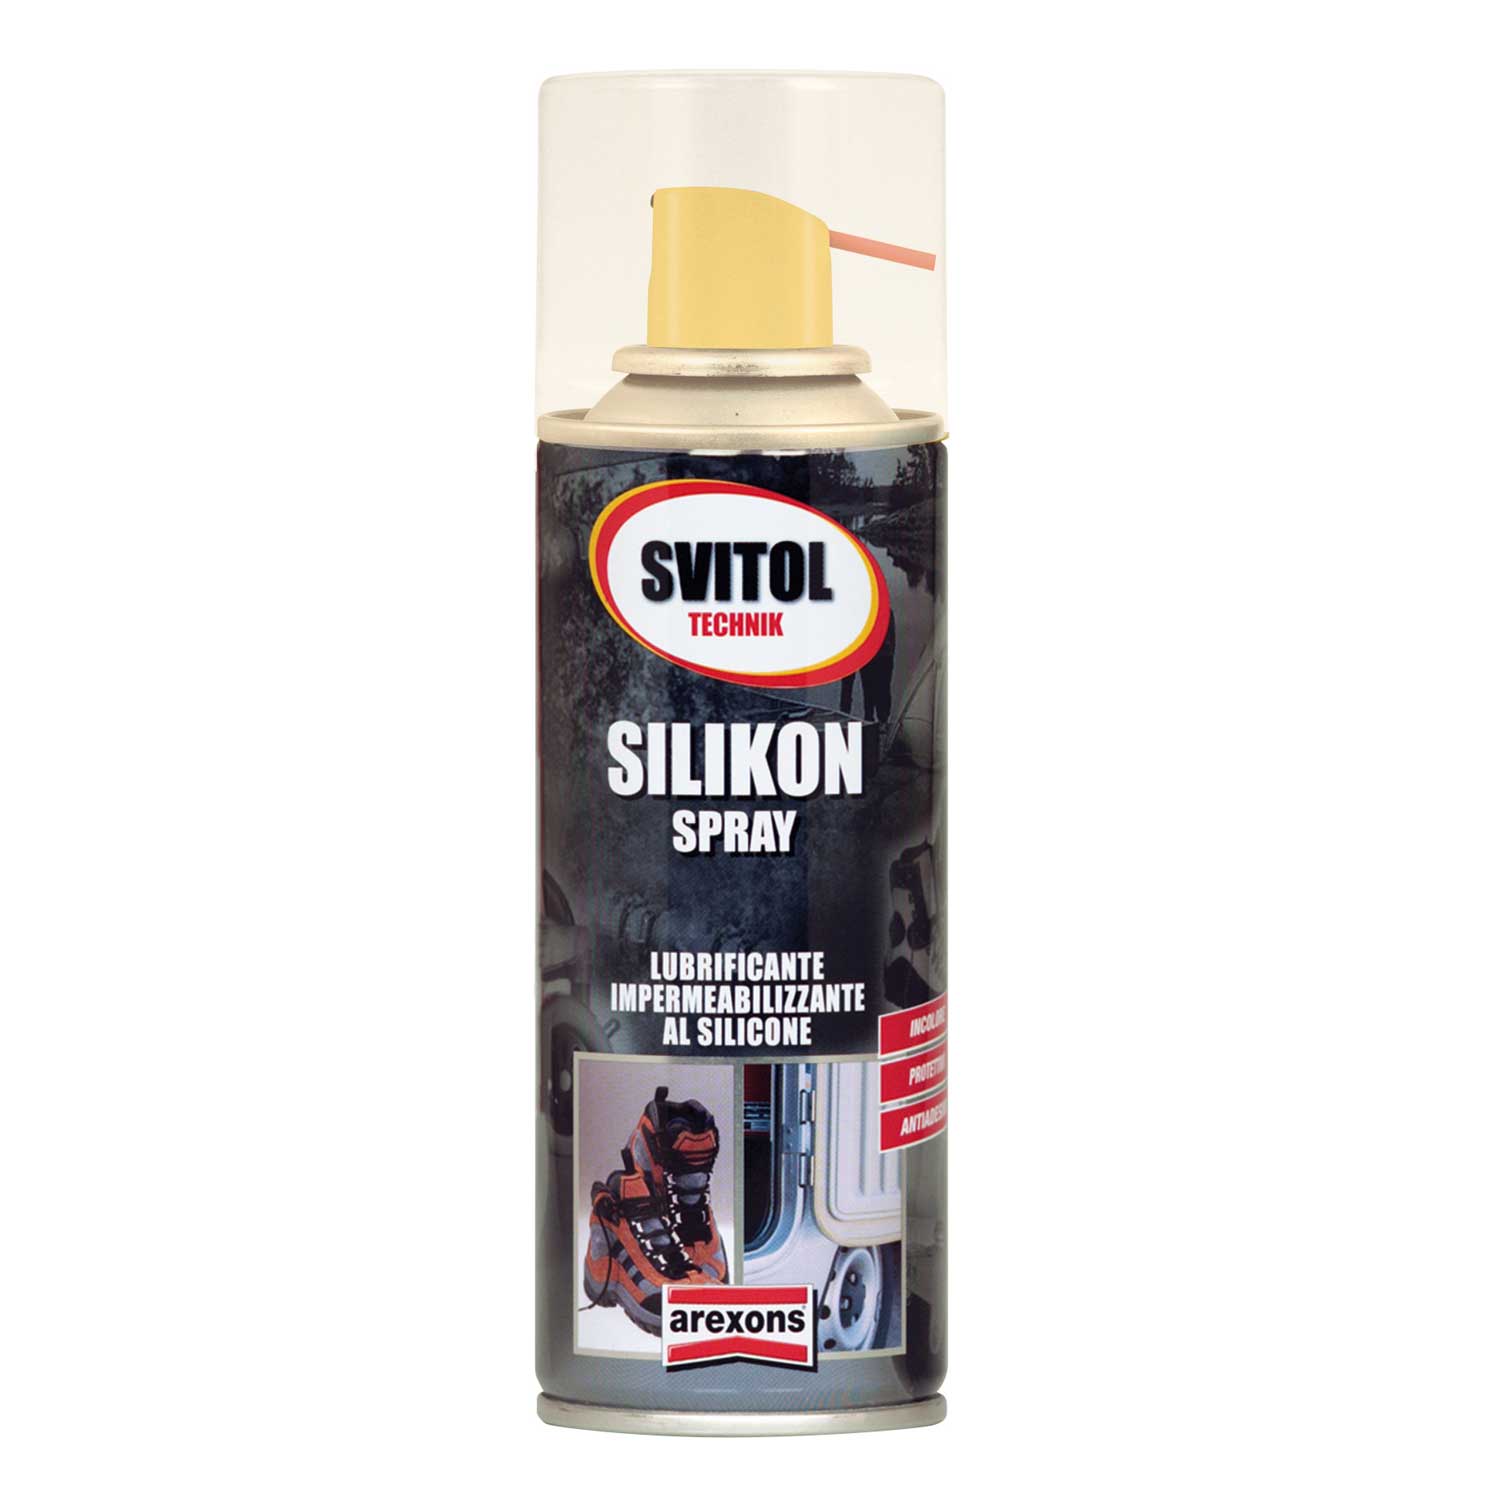 AREXONS Silikon 4183 in spray da 400ml impermeabilizzante con